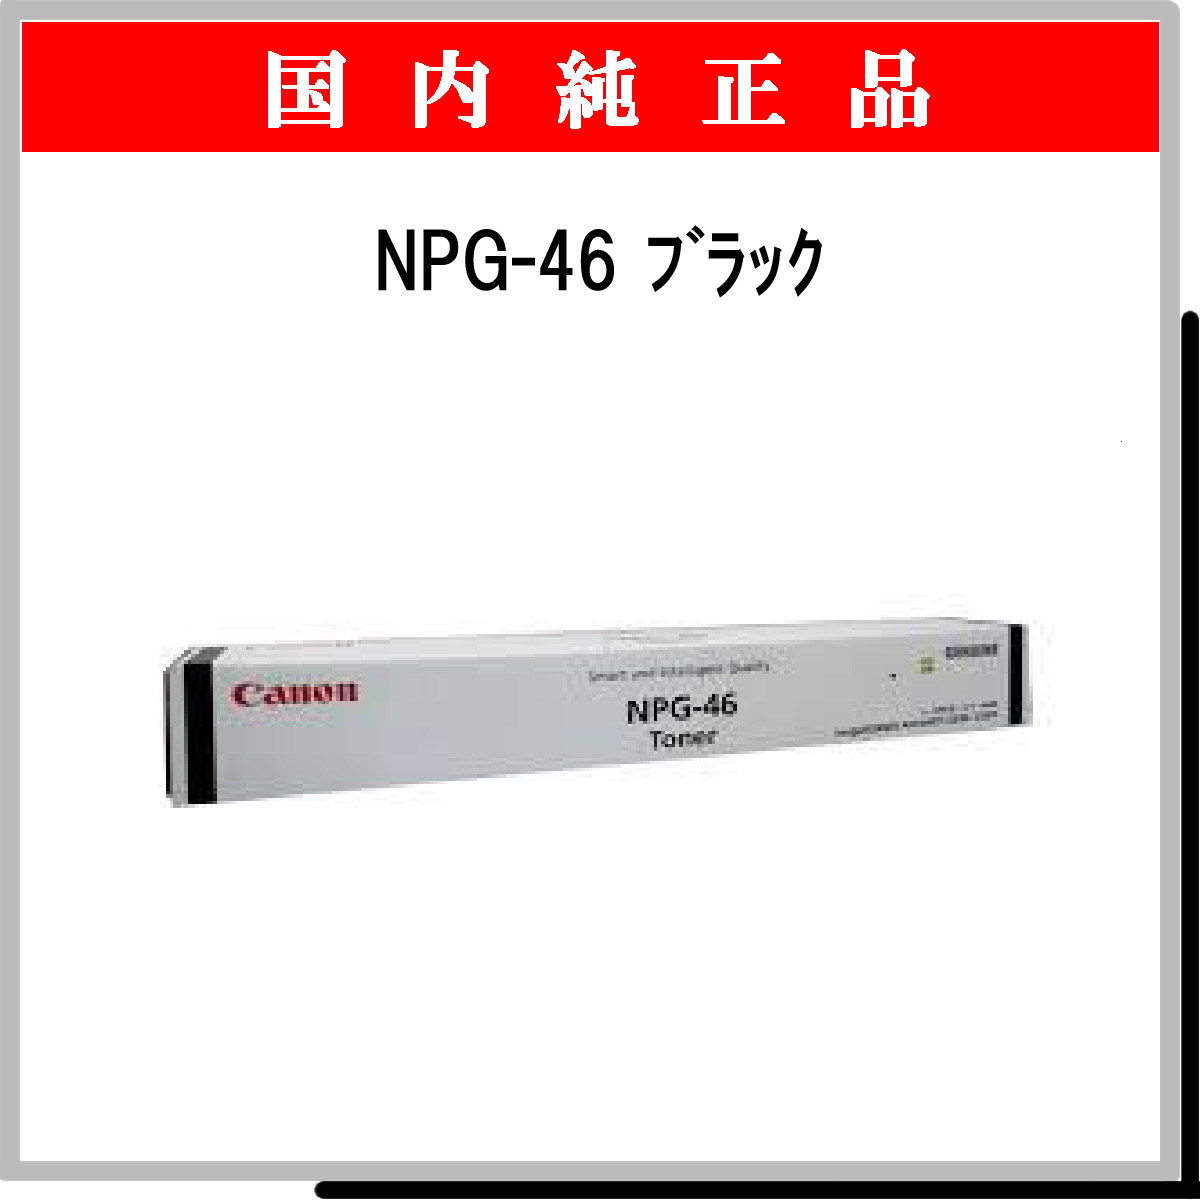 NPG-46 ﾌﾞﾗｯｸ 純正